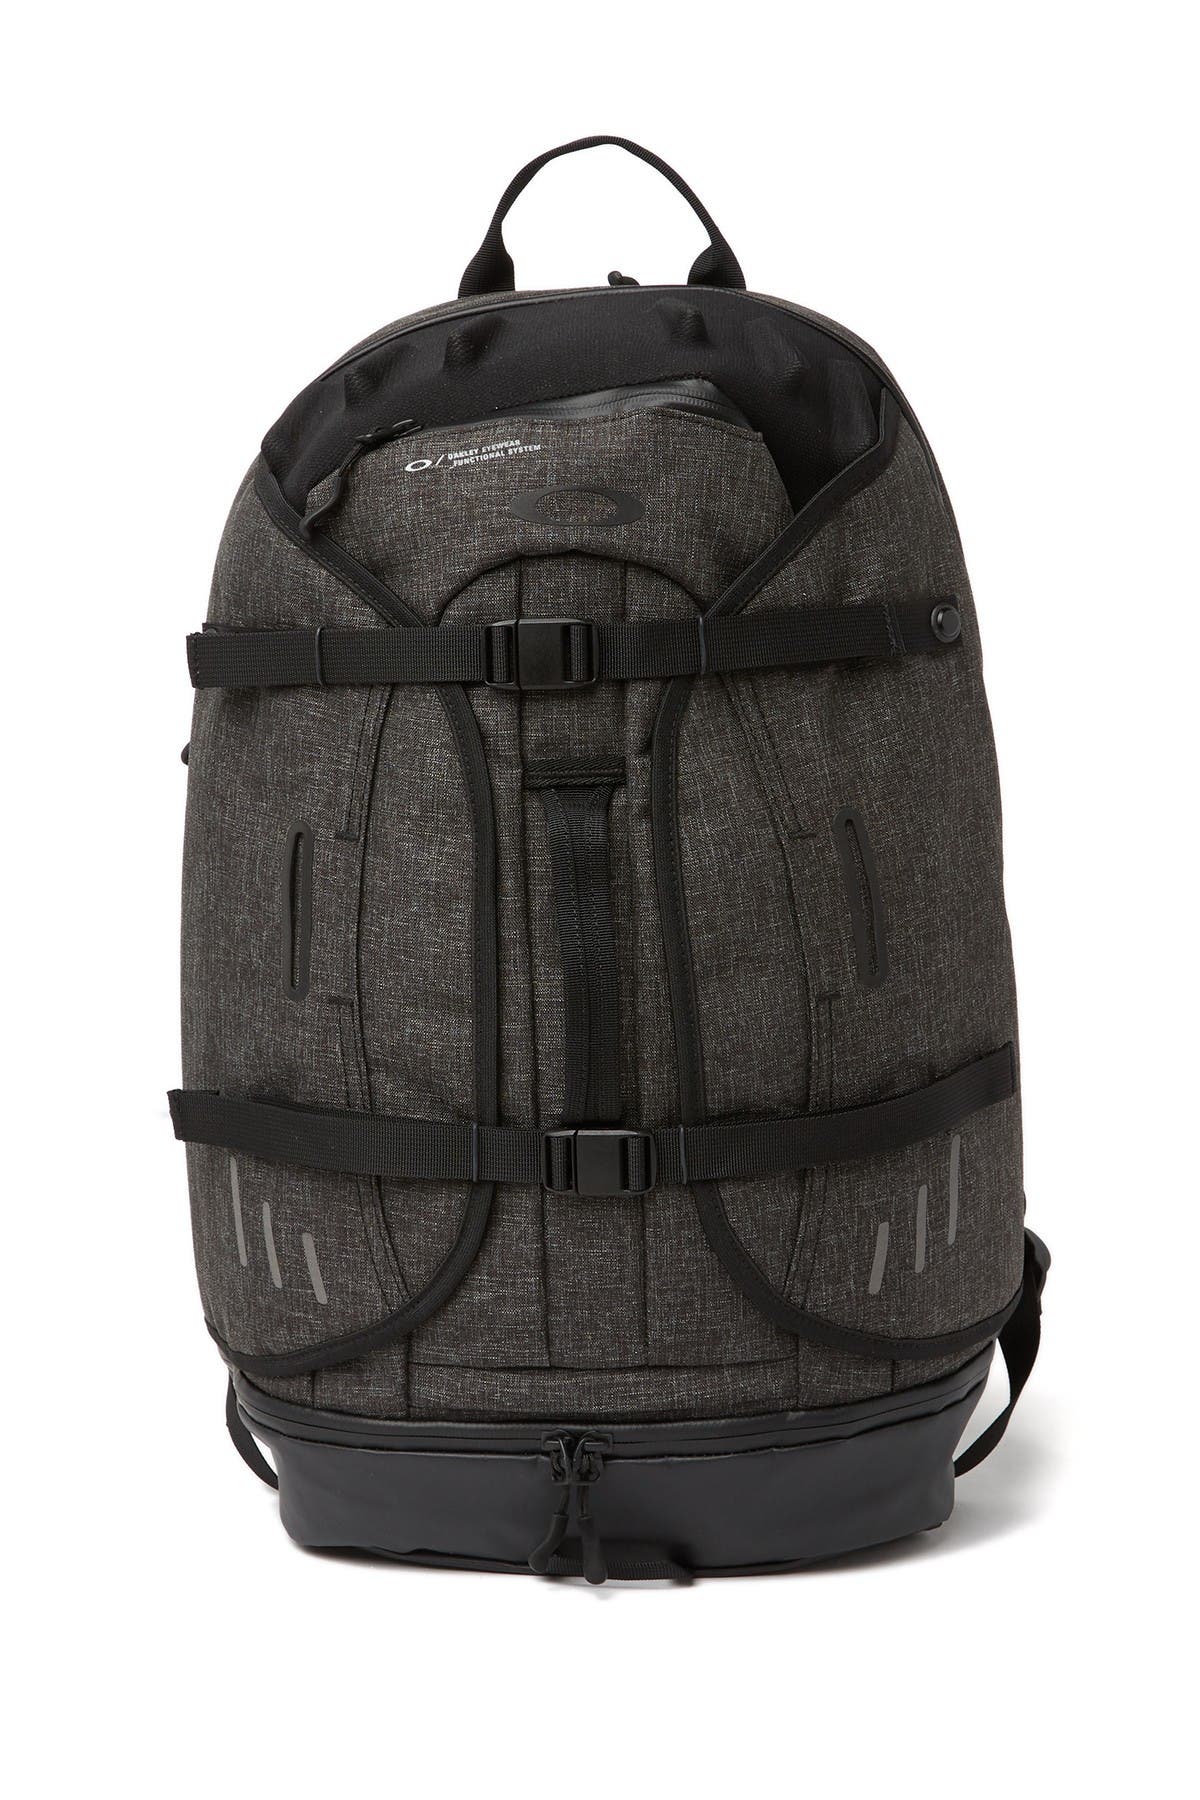 oakley aero backpack